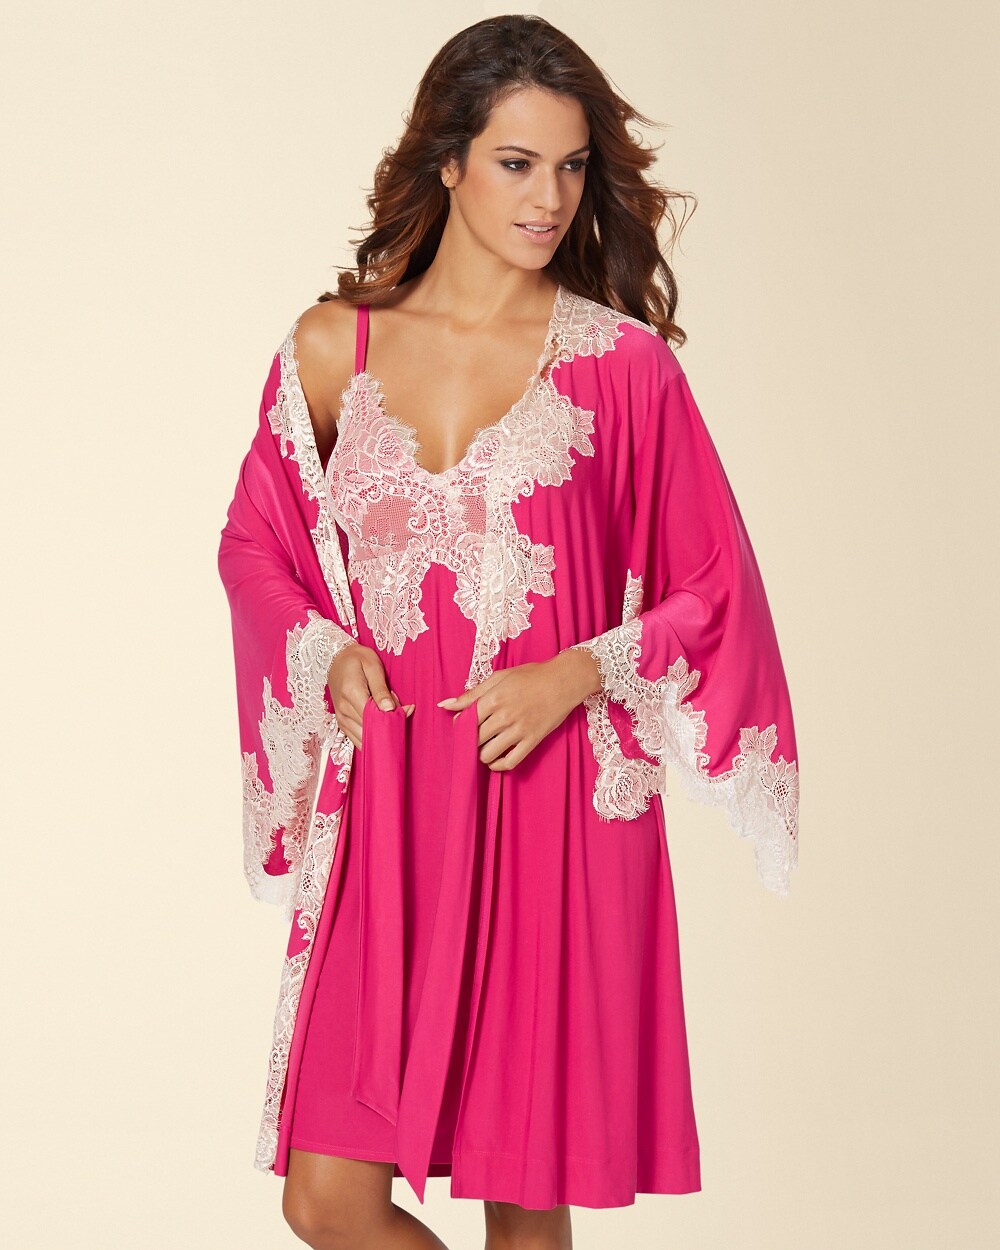 Shop La Perla Azalea nightgown | Sleepwear women, Night 